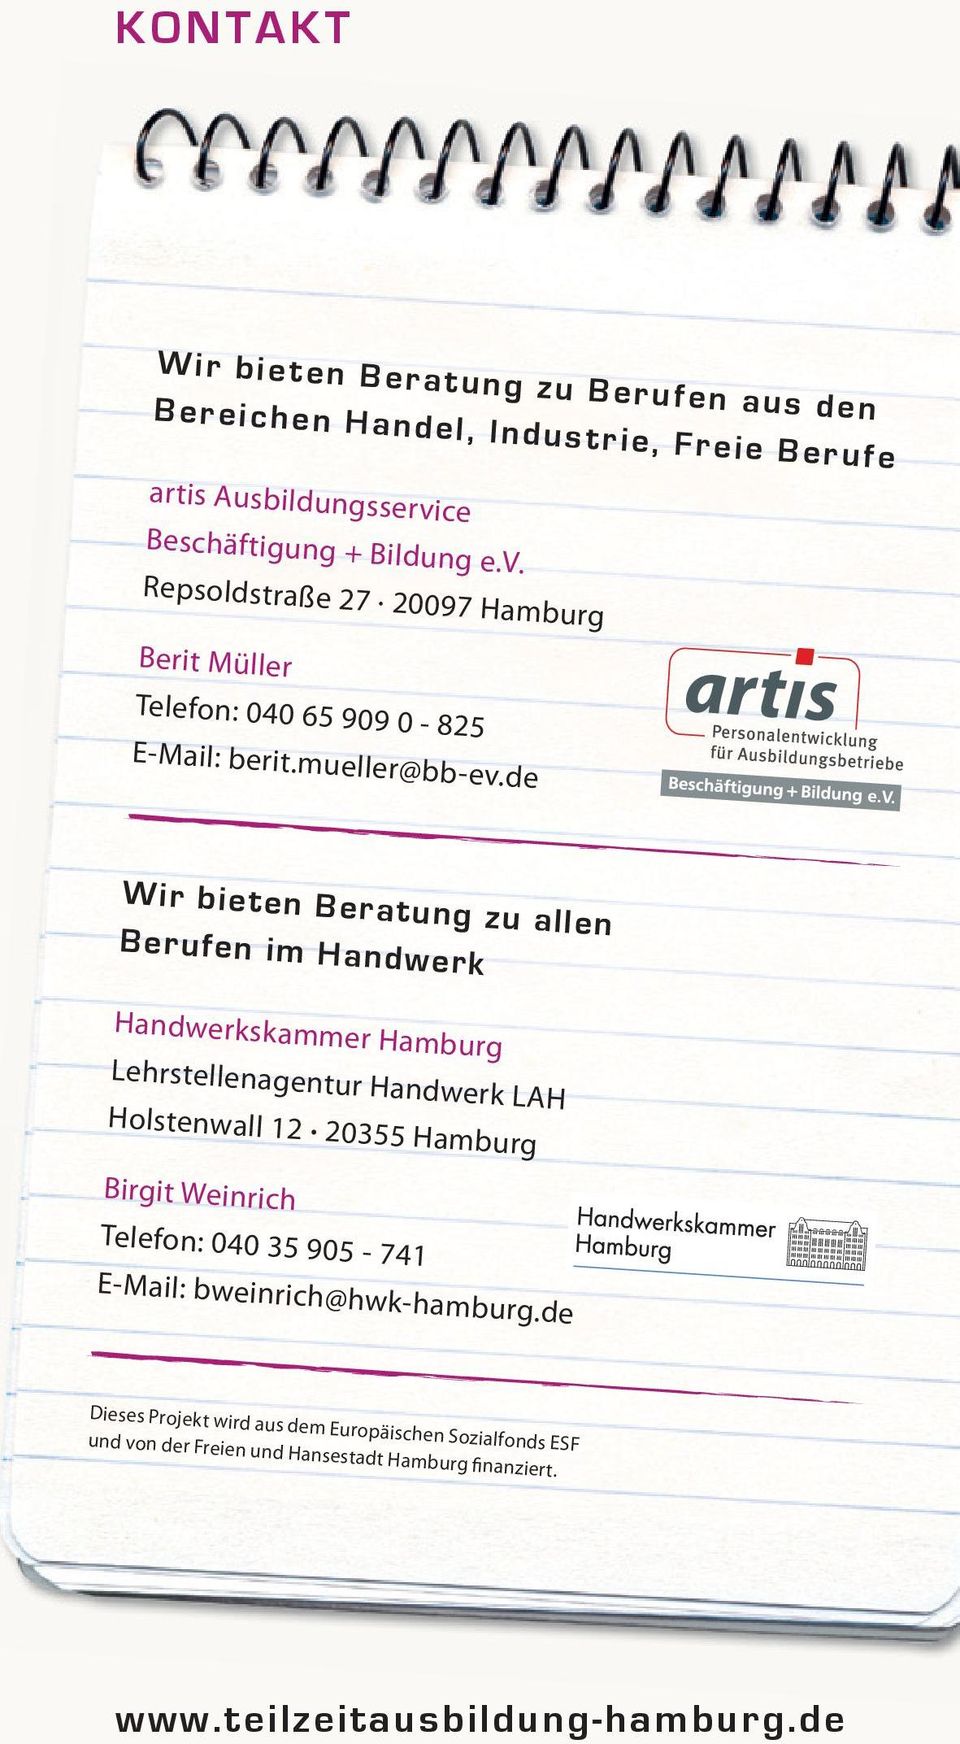 de Wir bieten Beratung zu allen Berufen im Handwerk Handwerkskammer Hamburg Lehrstellenagentur Handwerk LAH Holstenwall 12 20355 Hamburg Birgit